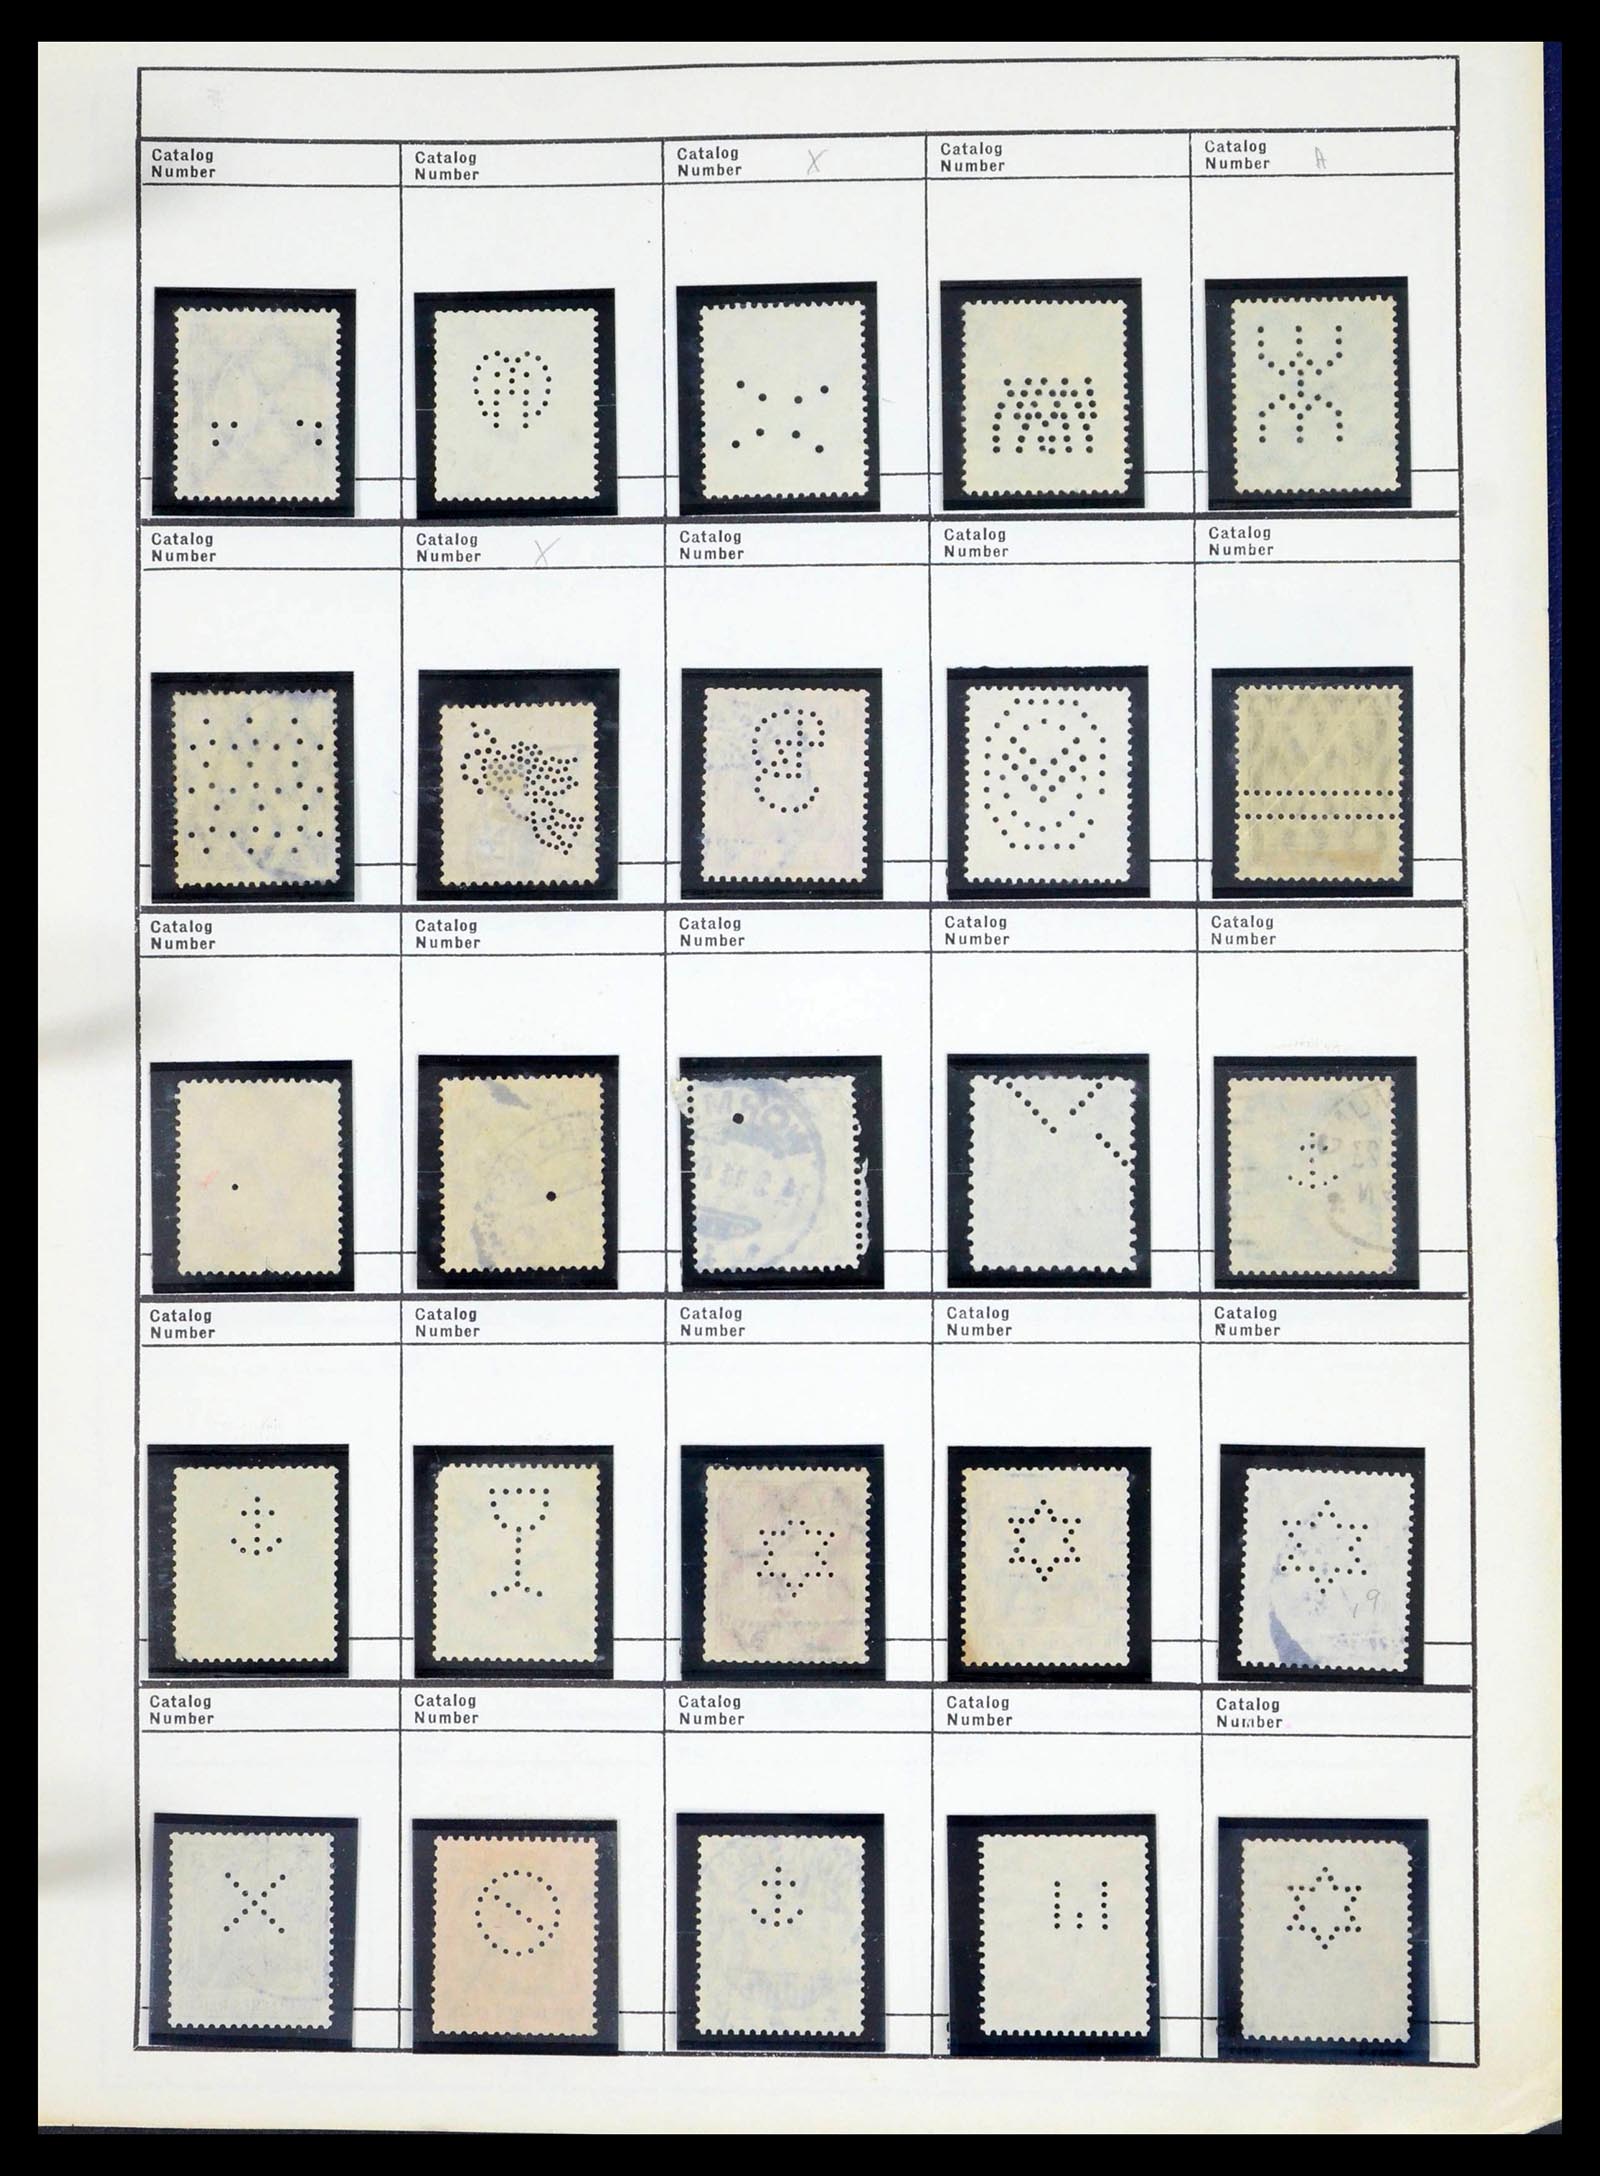 39480 0598 - Stamp collection 39480 German Reich perfins 1880-1955.